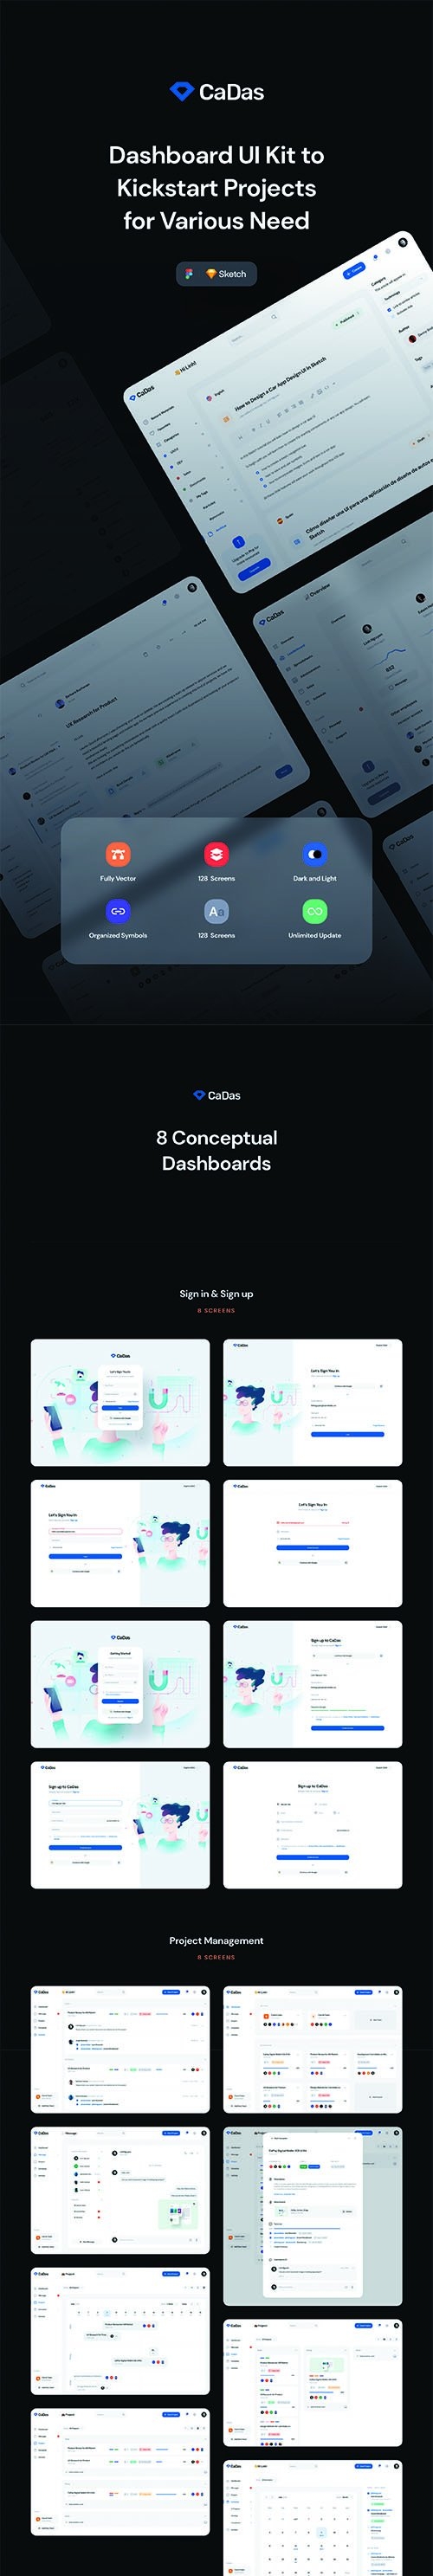 CaDas Dashboard UI Kit